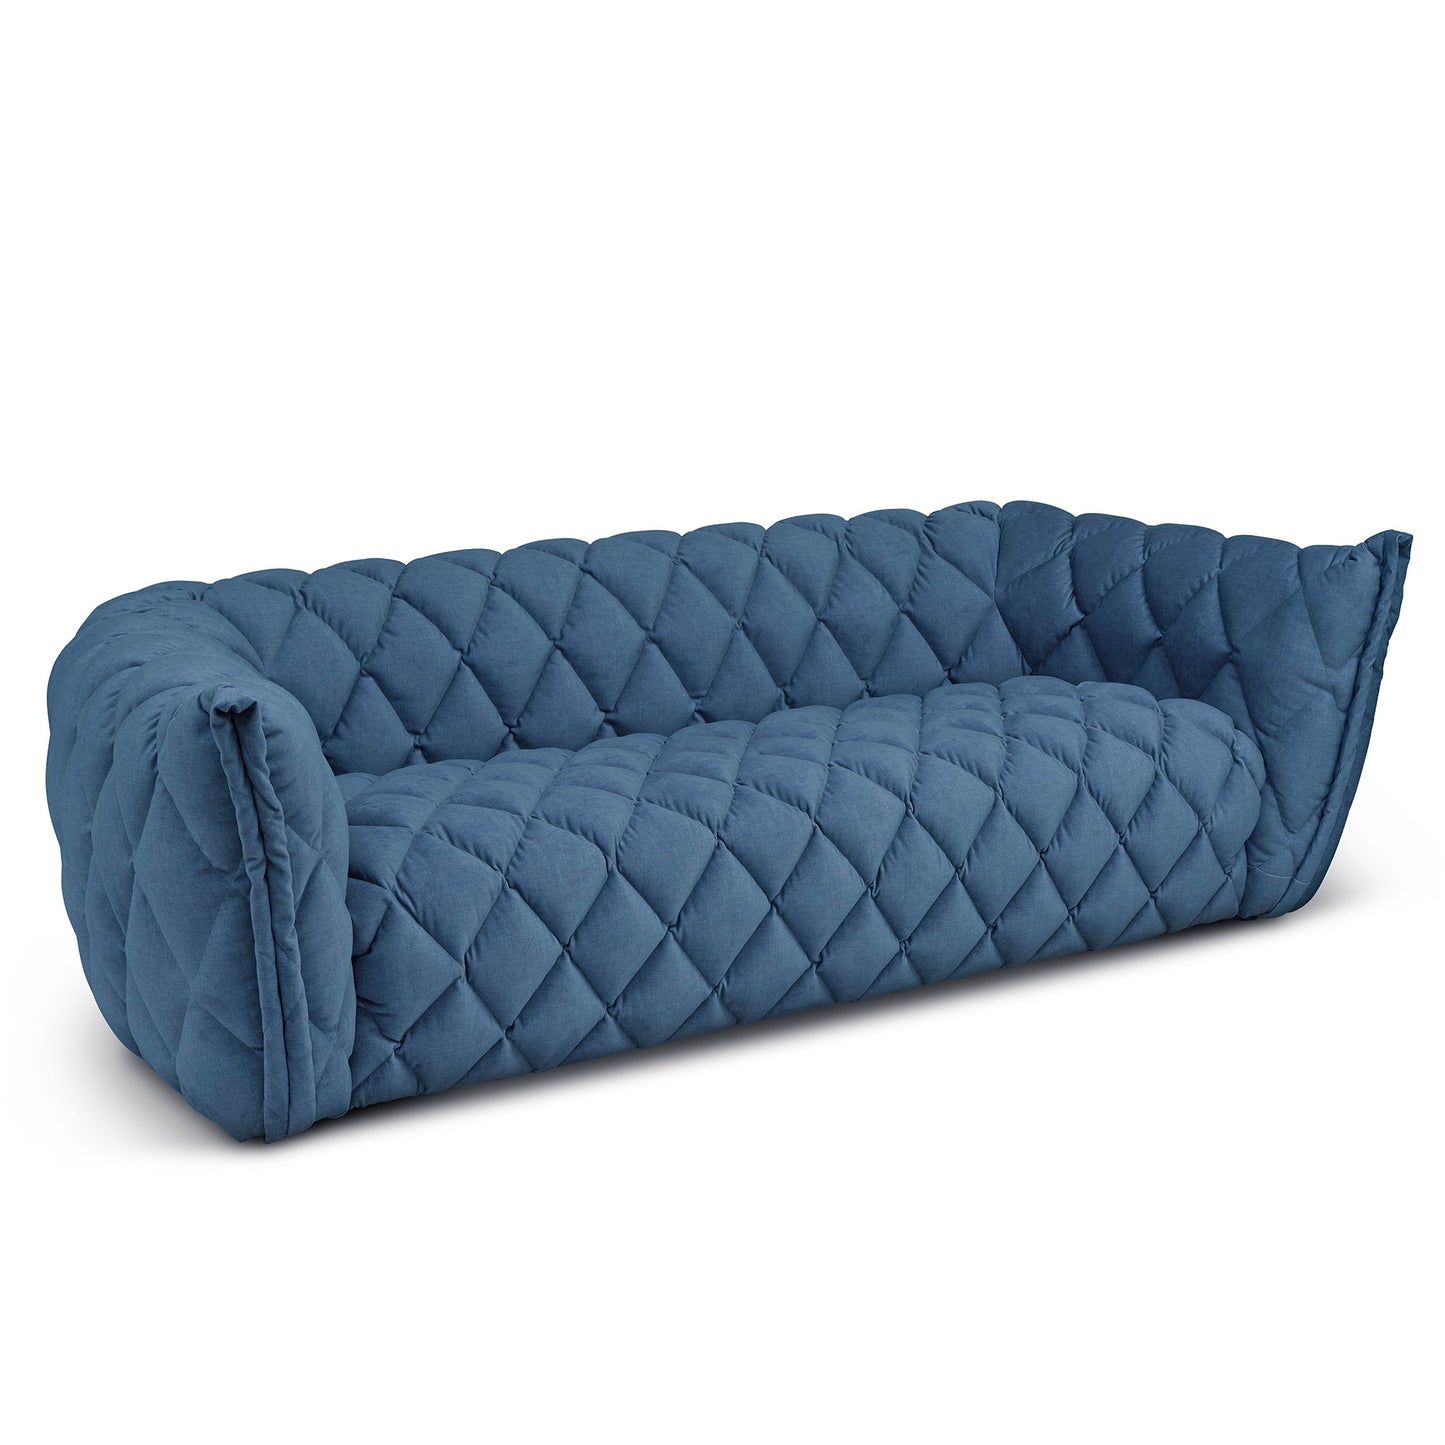 Petroleumblå design soffa i sammet. Chesterfield soffa som är modern